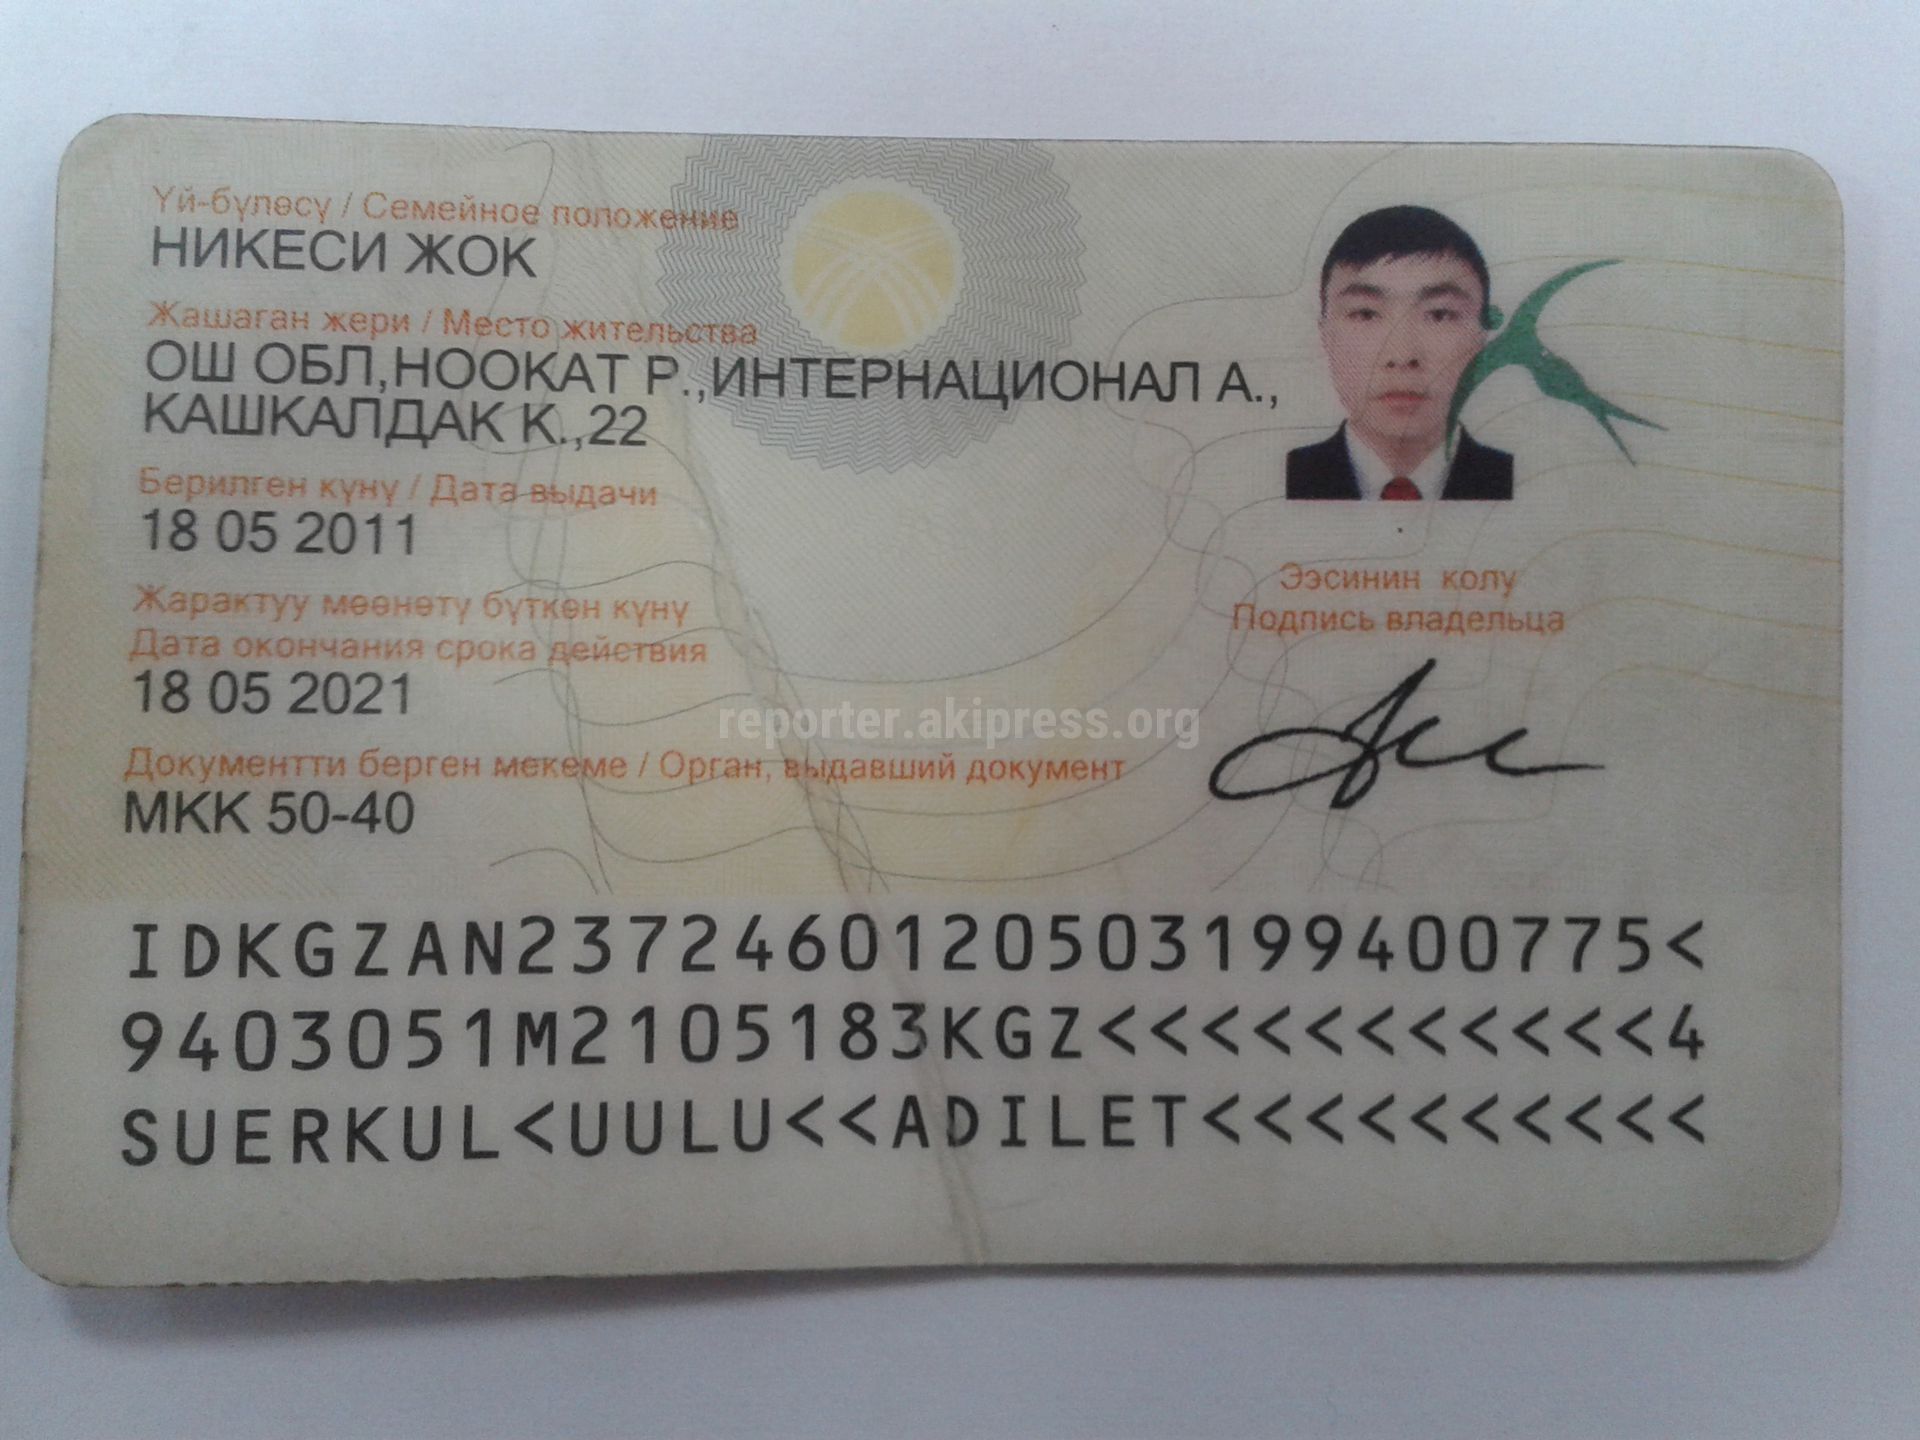 Киргизский паспорт